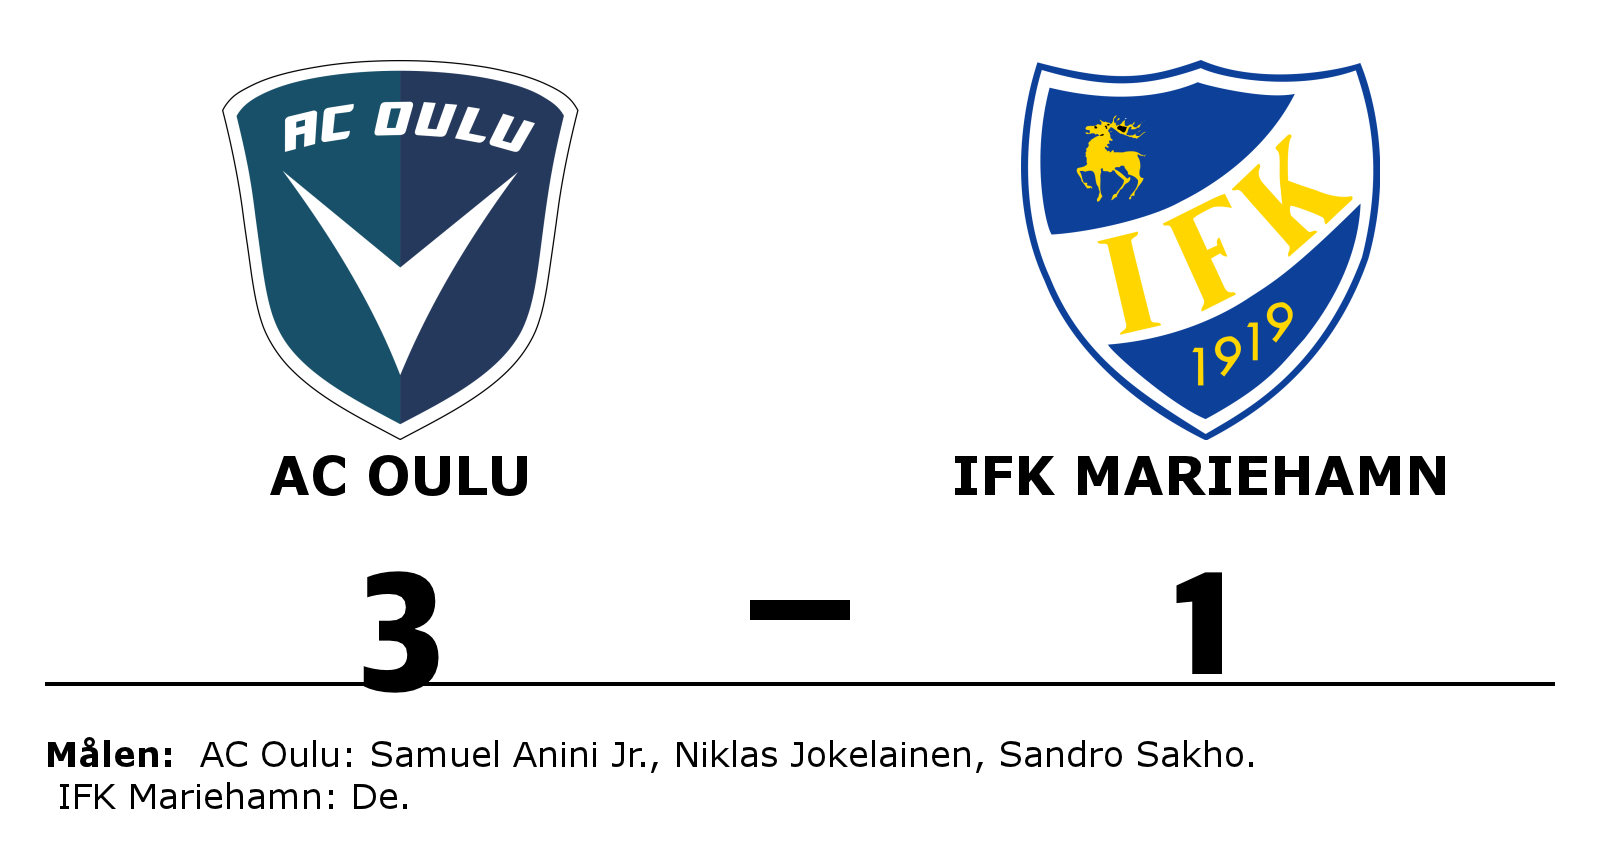 AC Oulu vann mot IFK Mariehamn